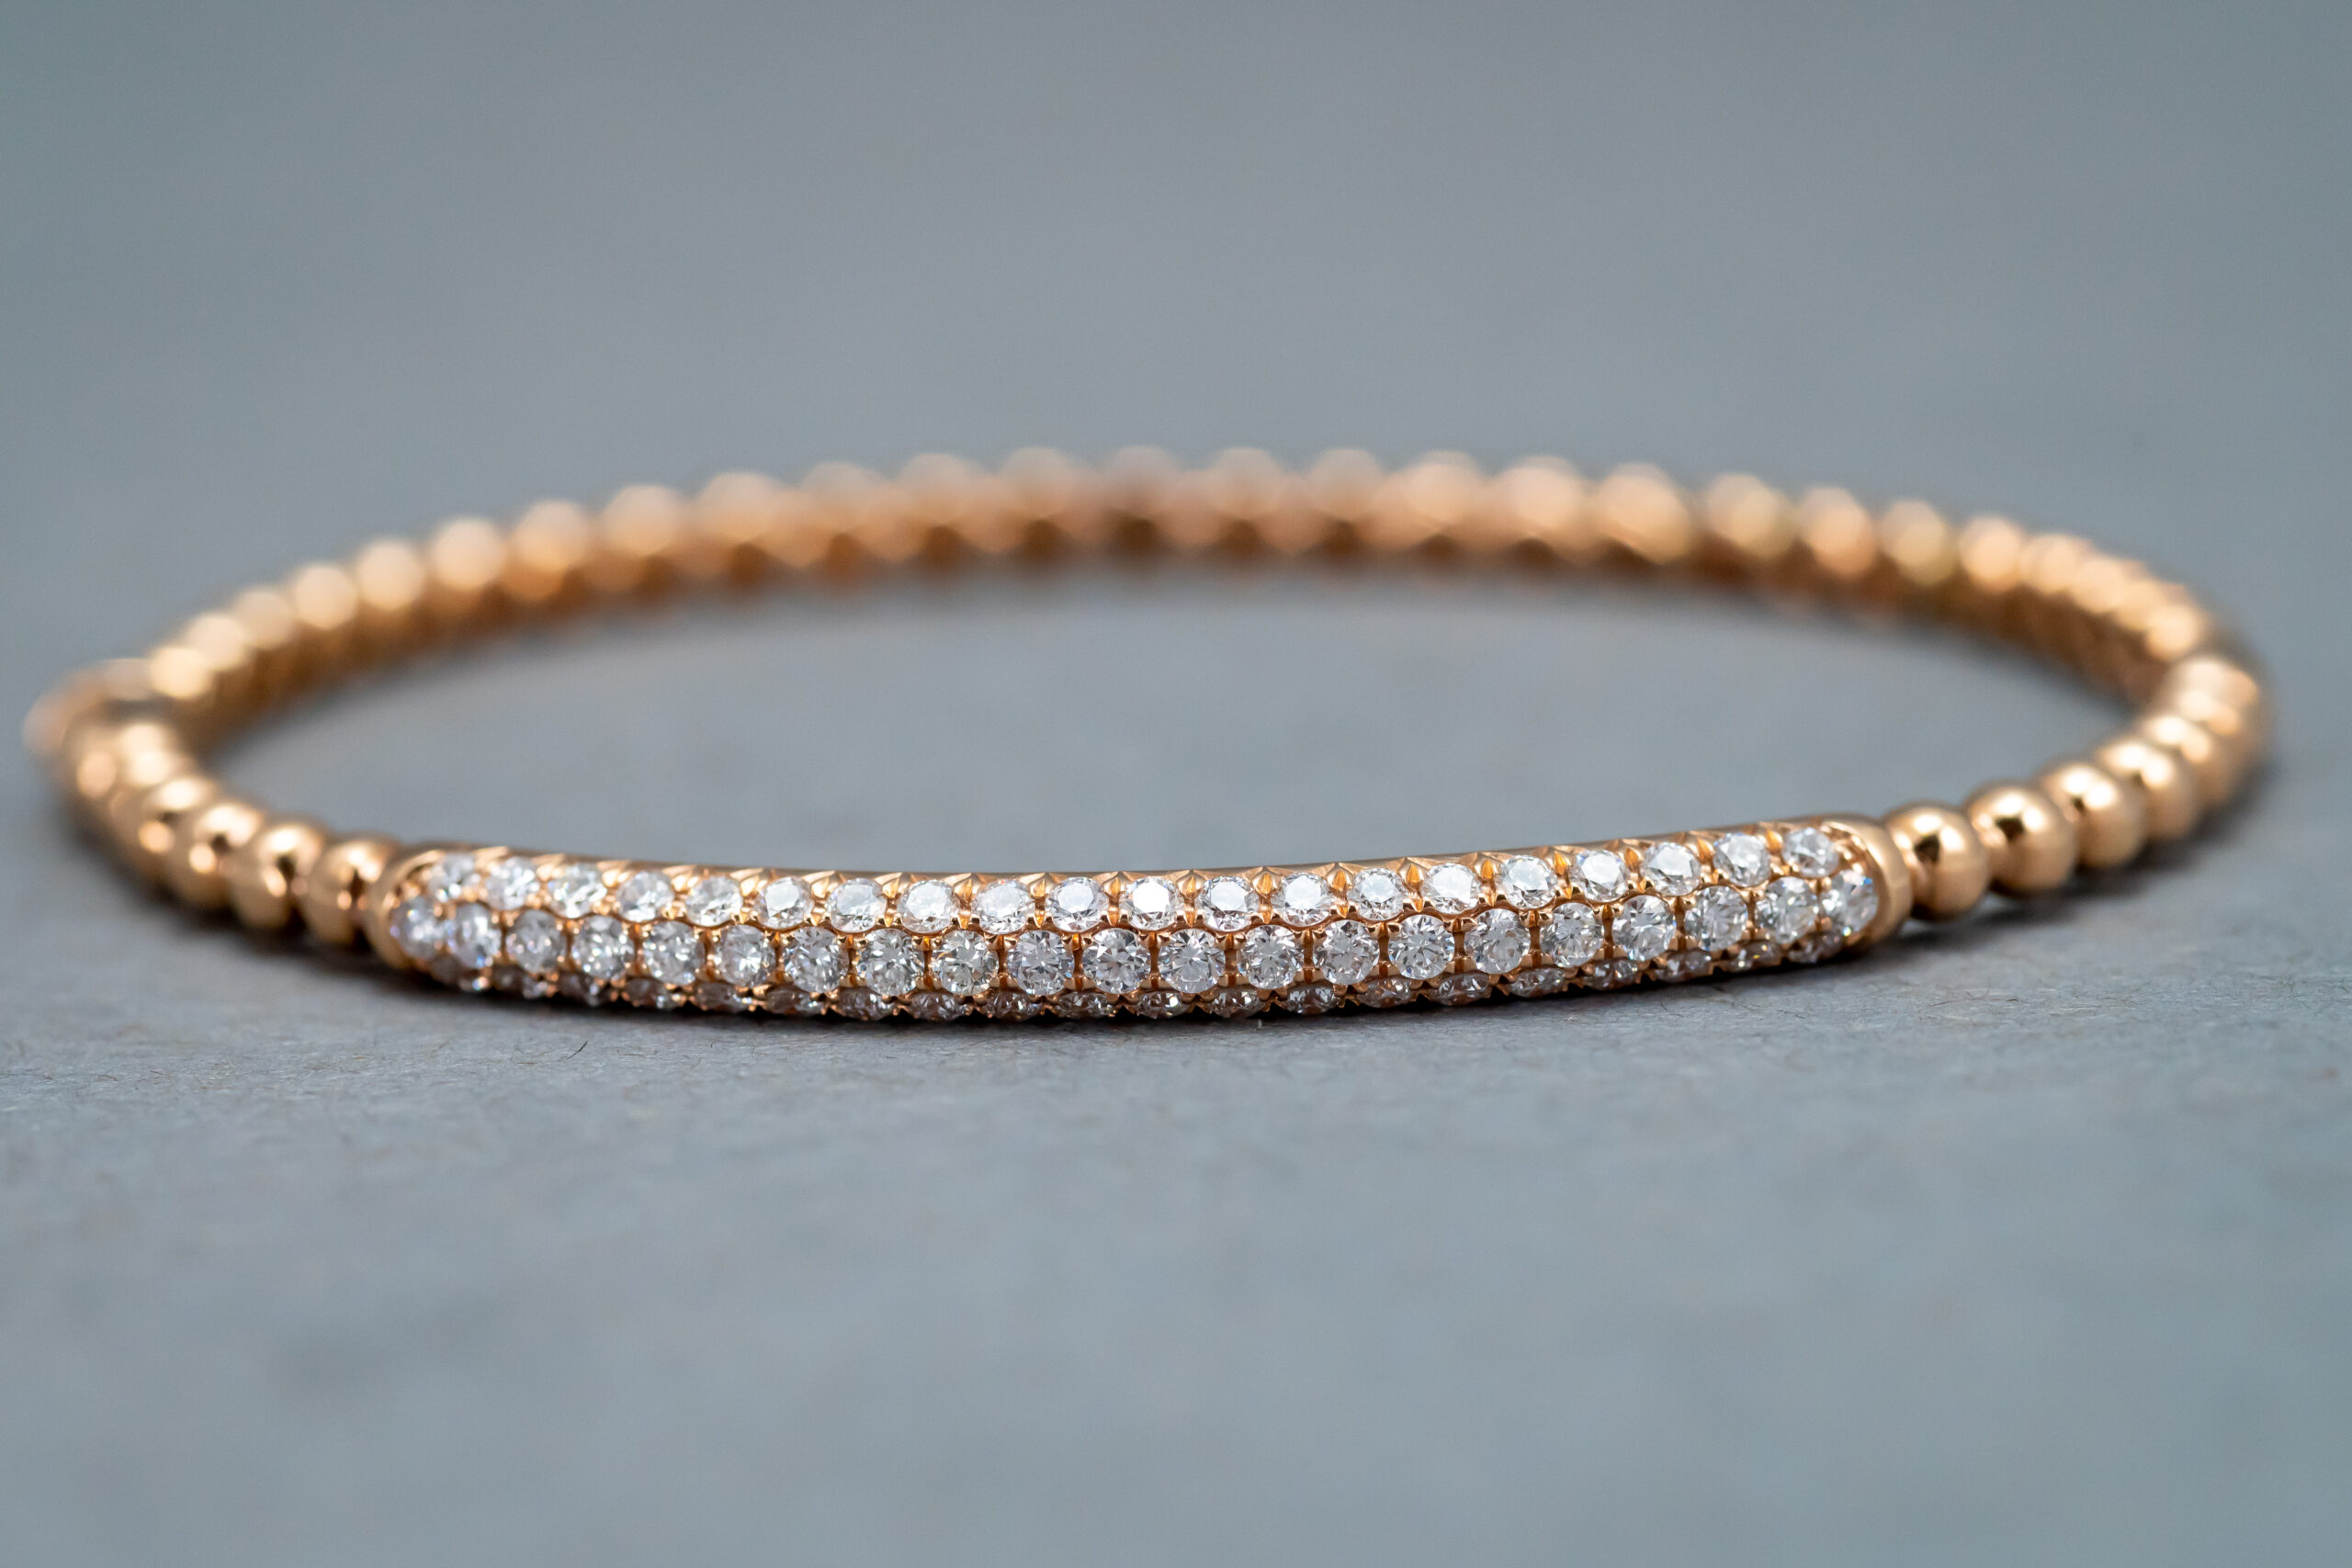 Letter “V” bangle Rose Gold Bracelet - Bracelets - Sterling Heights,  Michigan, Facebook Marketplace